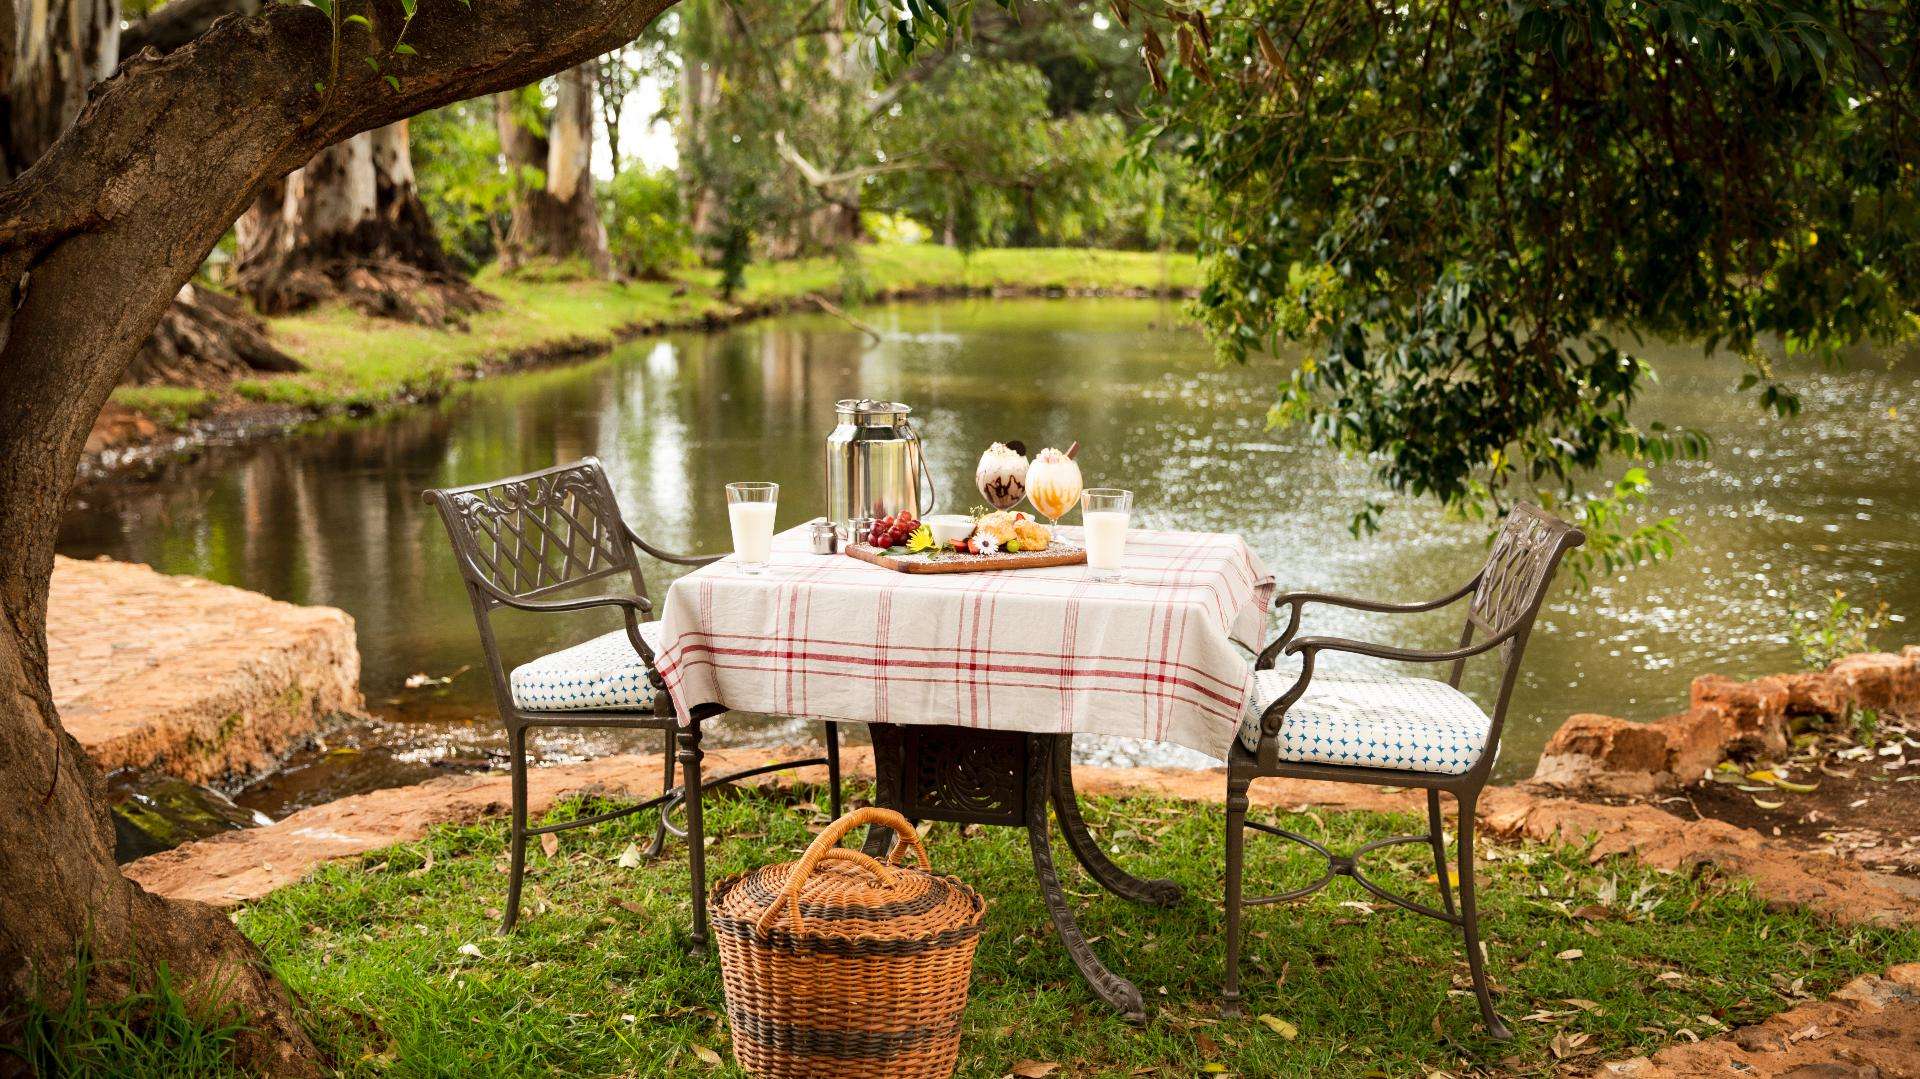 Tisch am Wasser mit Essen und Picknickkorb